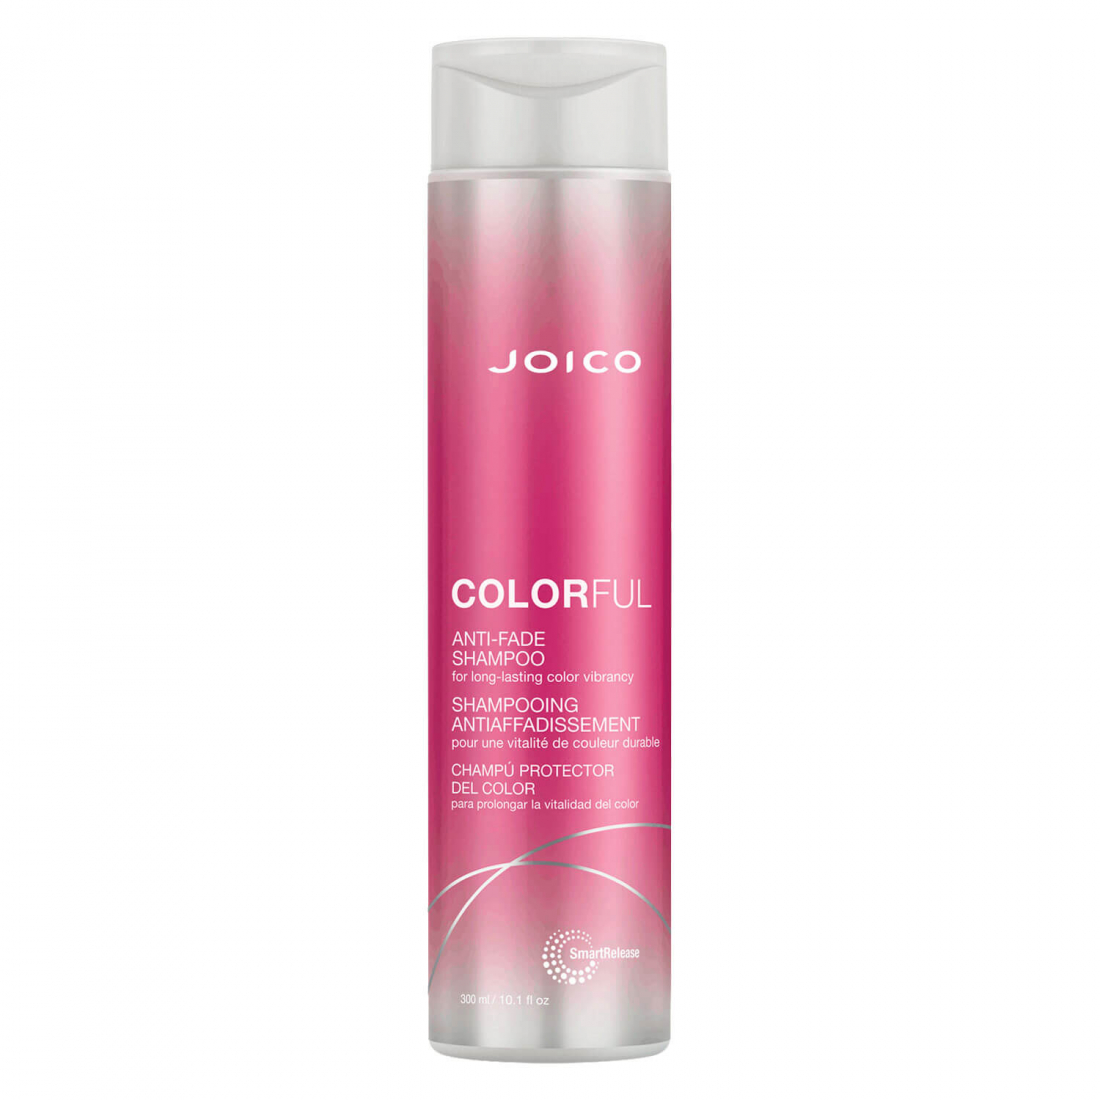 'Colorful Anti-Fade' Shampoo - 300 ml